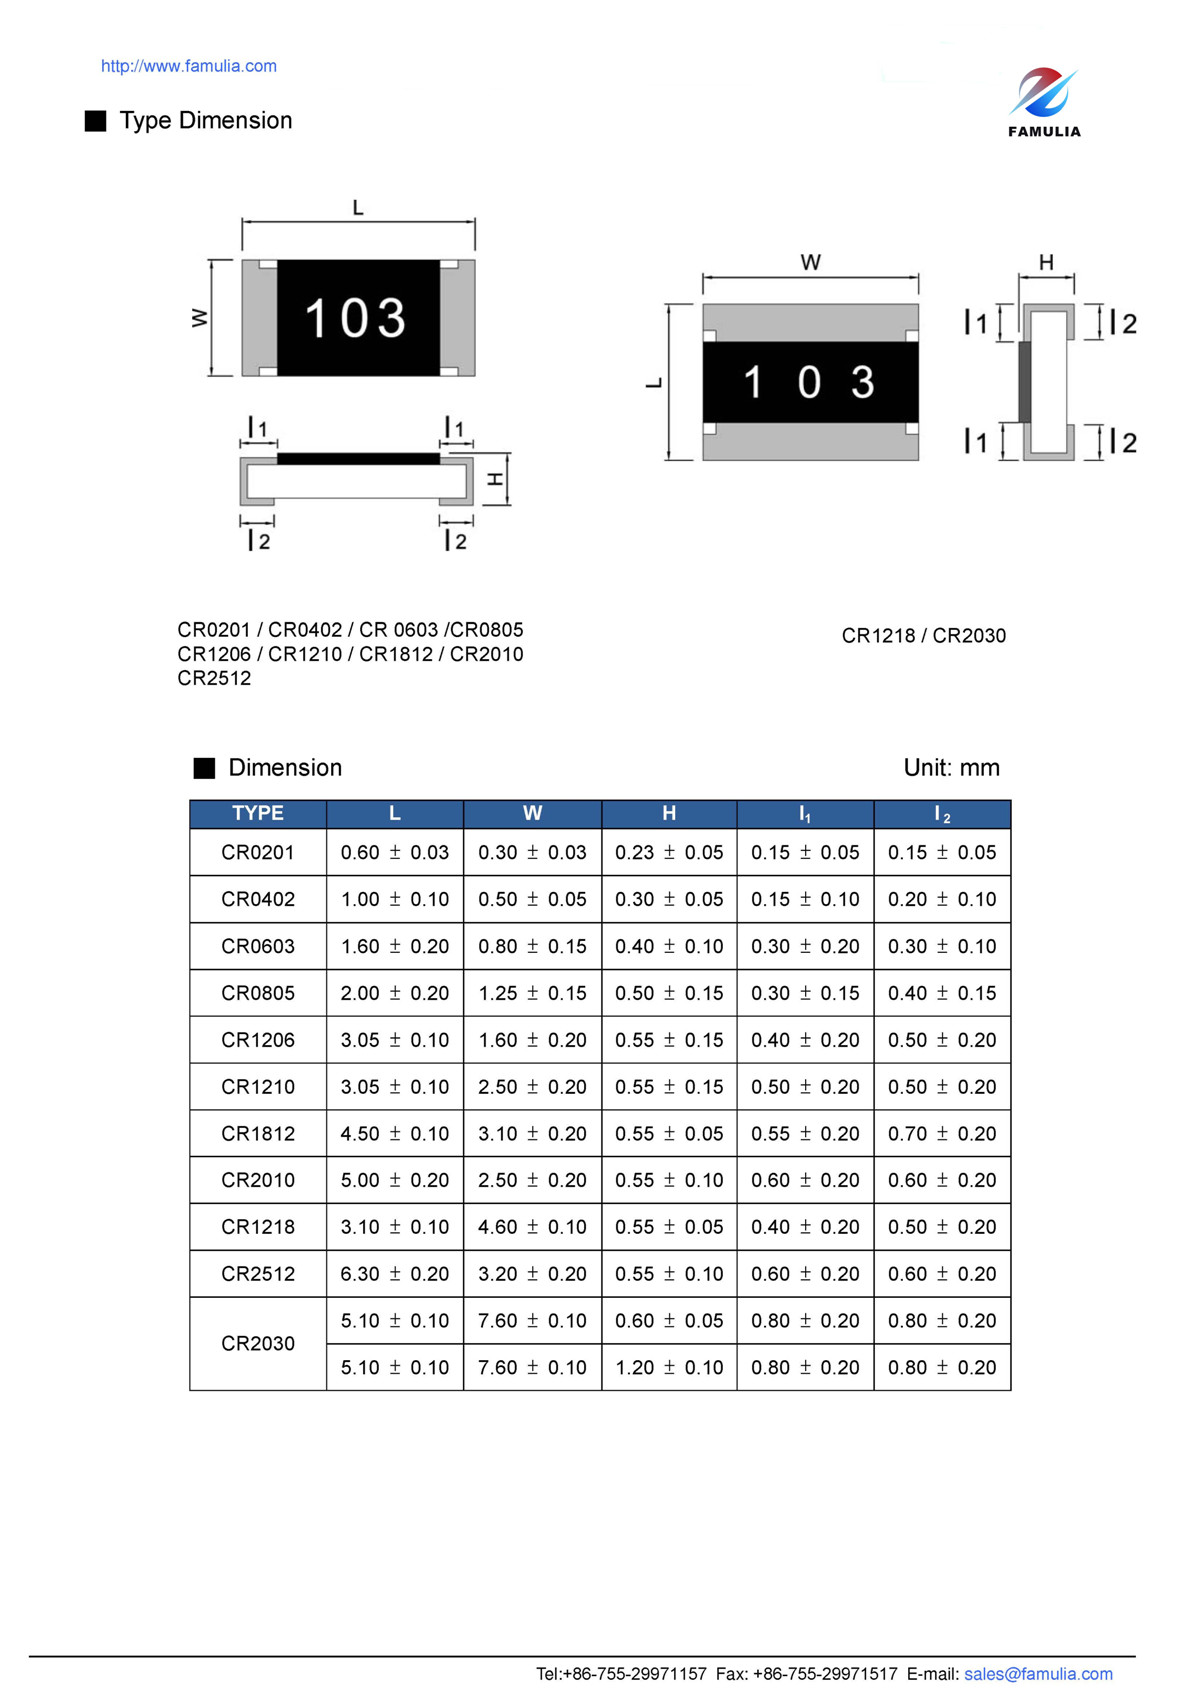 CR系列厚膜晶片电阻_页面_2.jpg